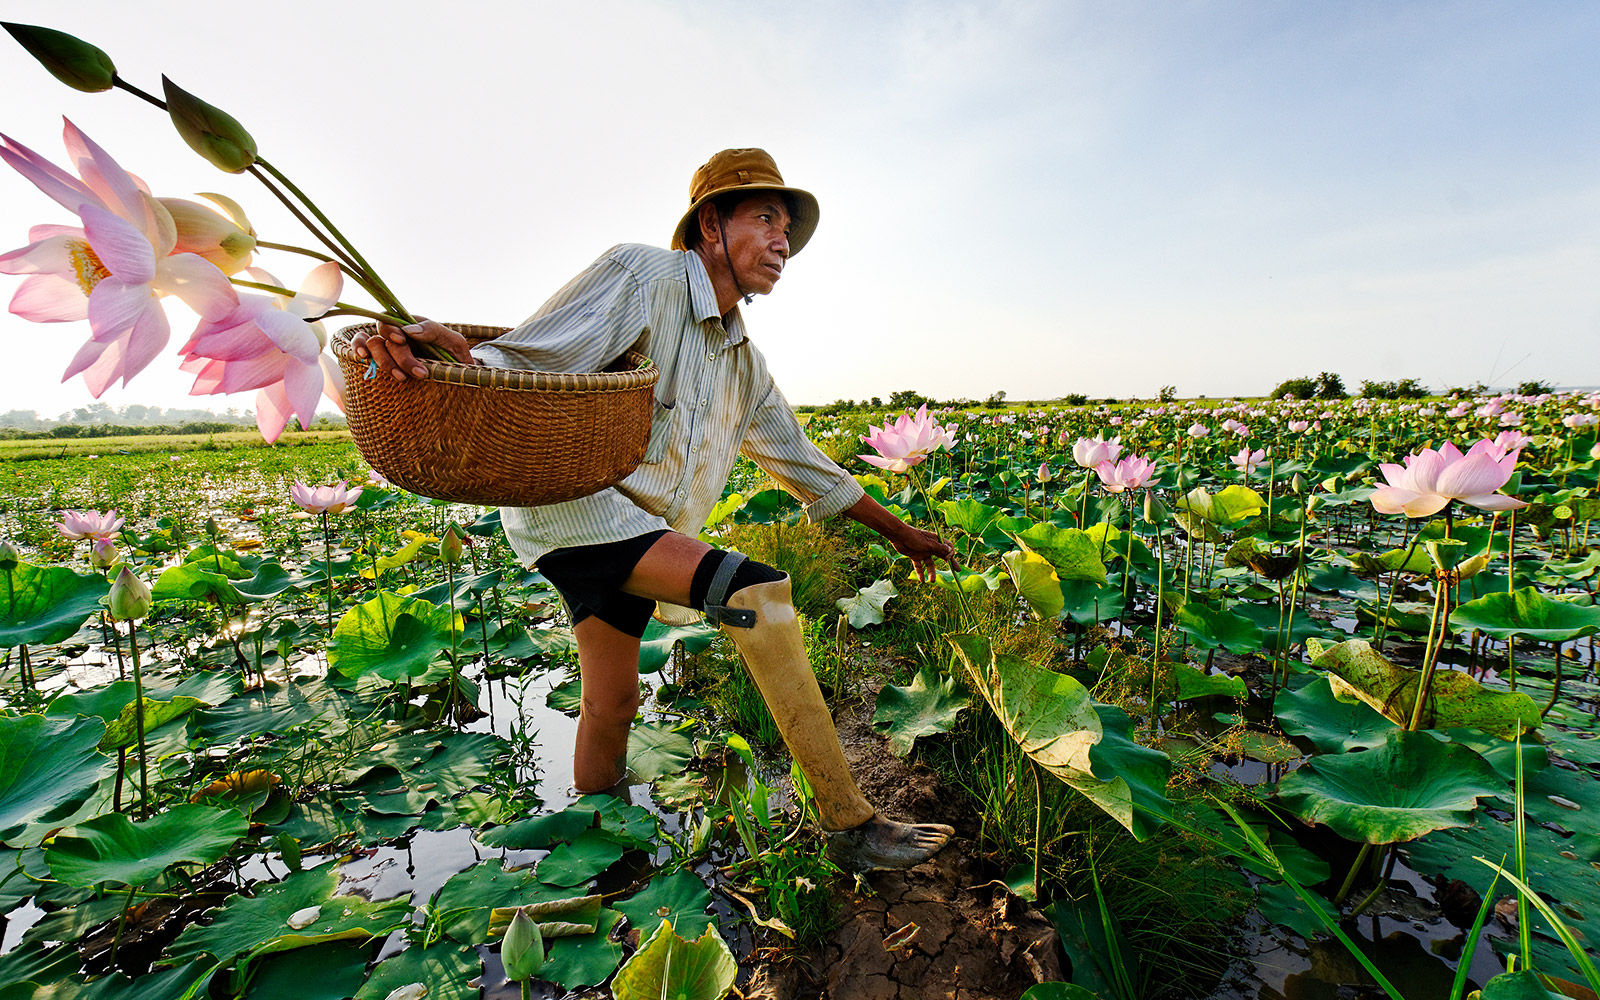 Cambodge, Province de Kompong Cham, M. Hab Chorn, victime d'une mine. HI lui a fourni une prothèse et l’accompagne. Il cultive la fleur de lotus. 